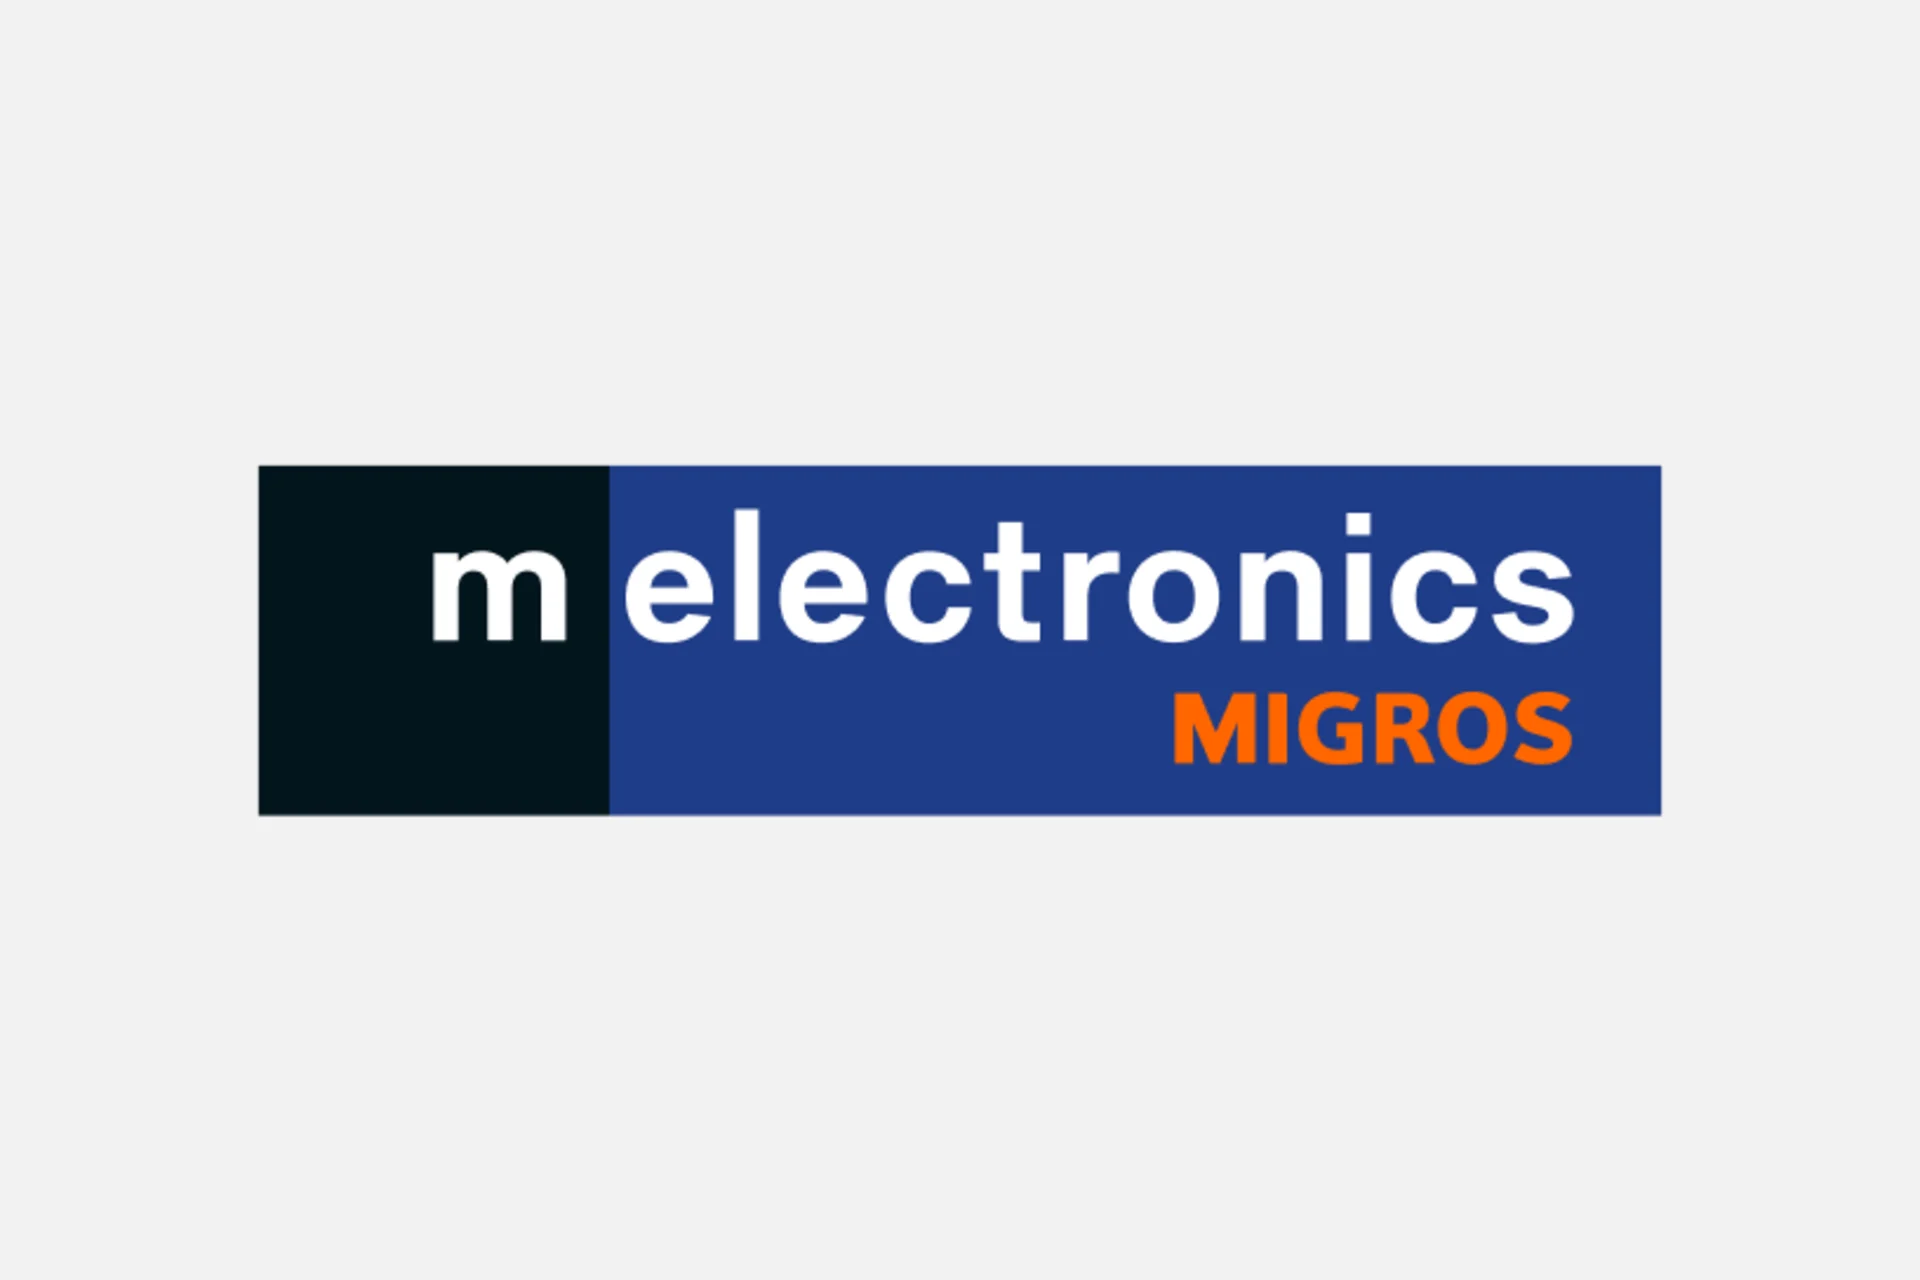 Melectronics logo